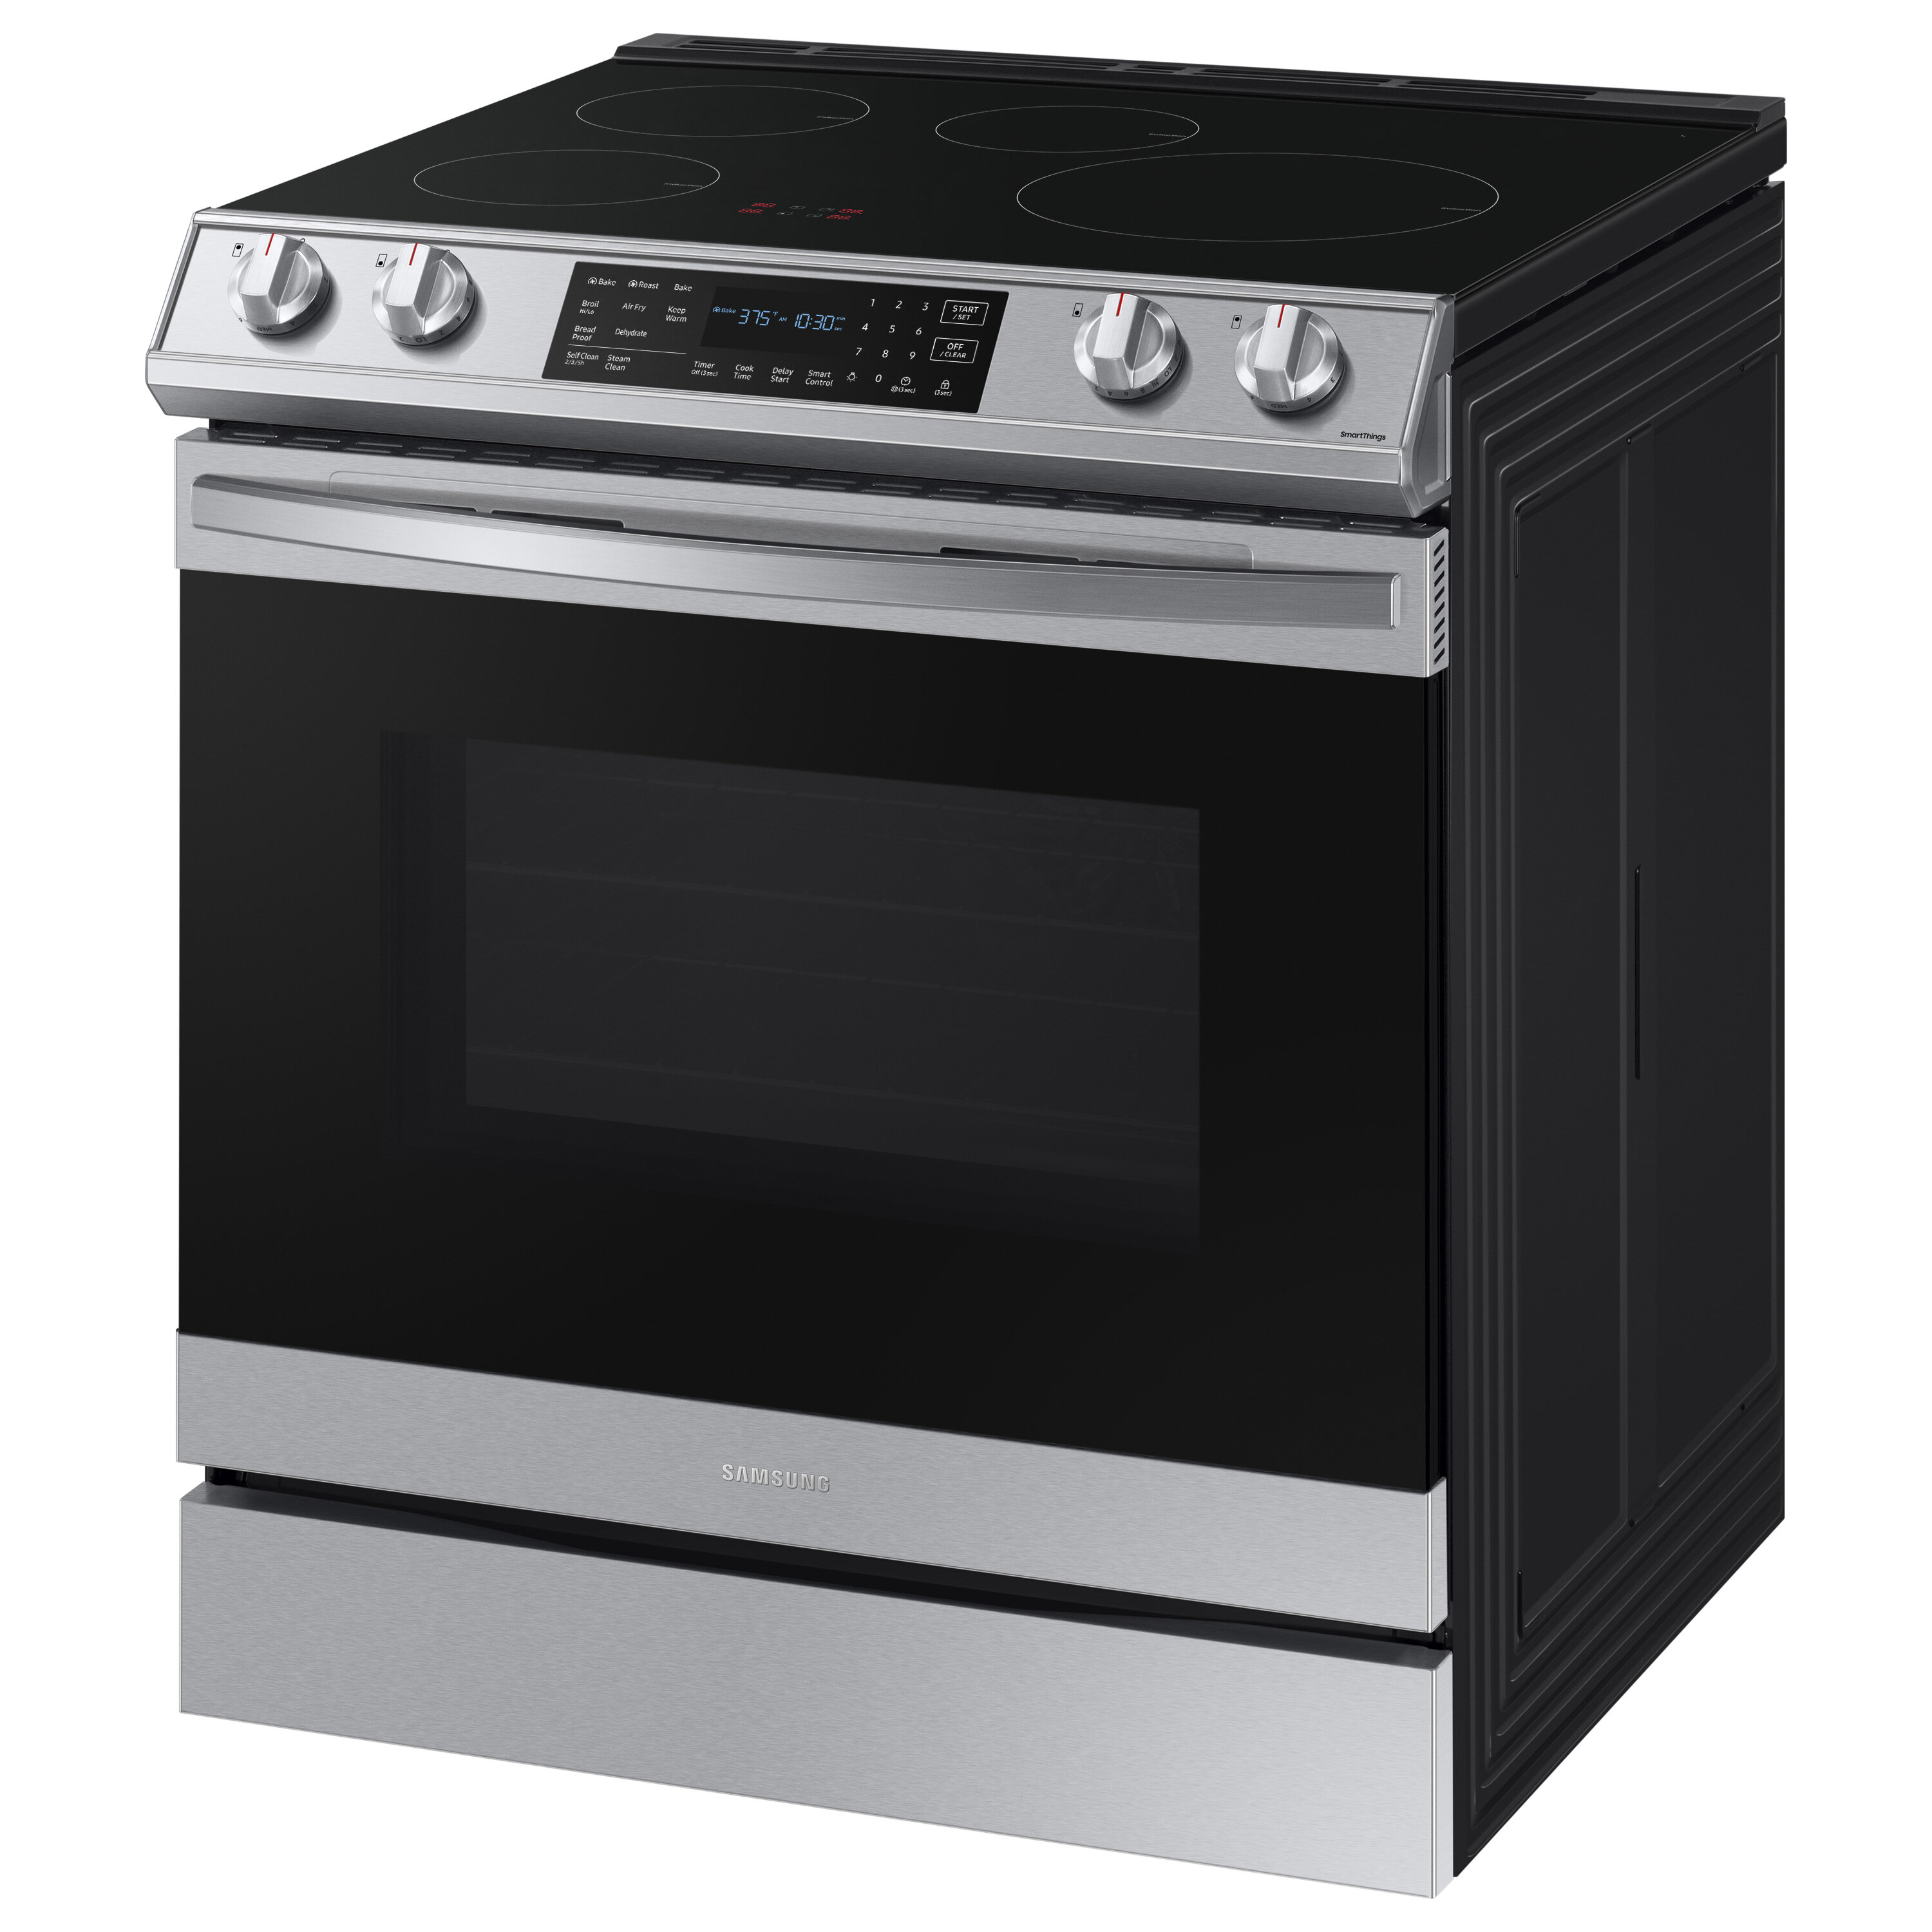 DuxTop Black Ranges & Cooking Appliances for sale